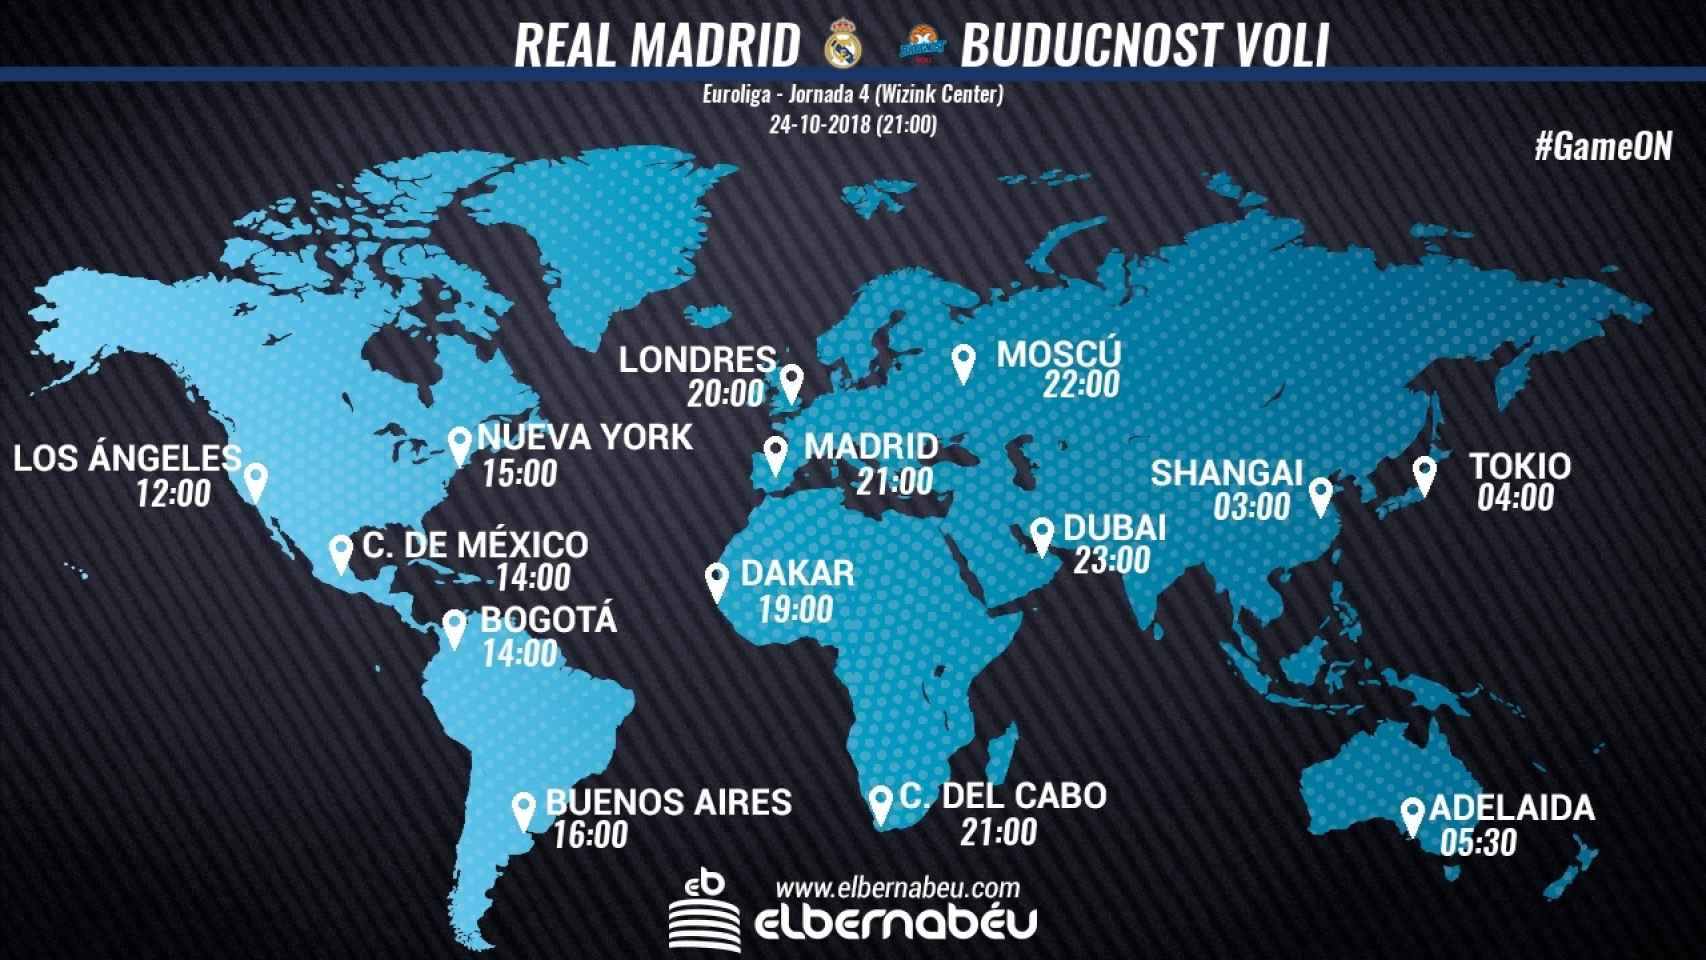 Horario internacional del Real Madrid - Buducnost